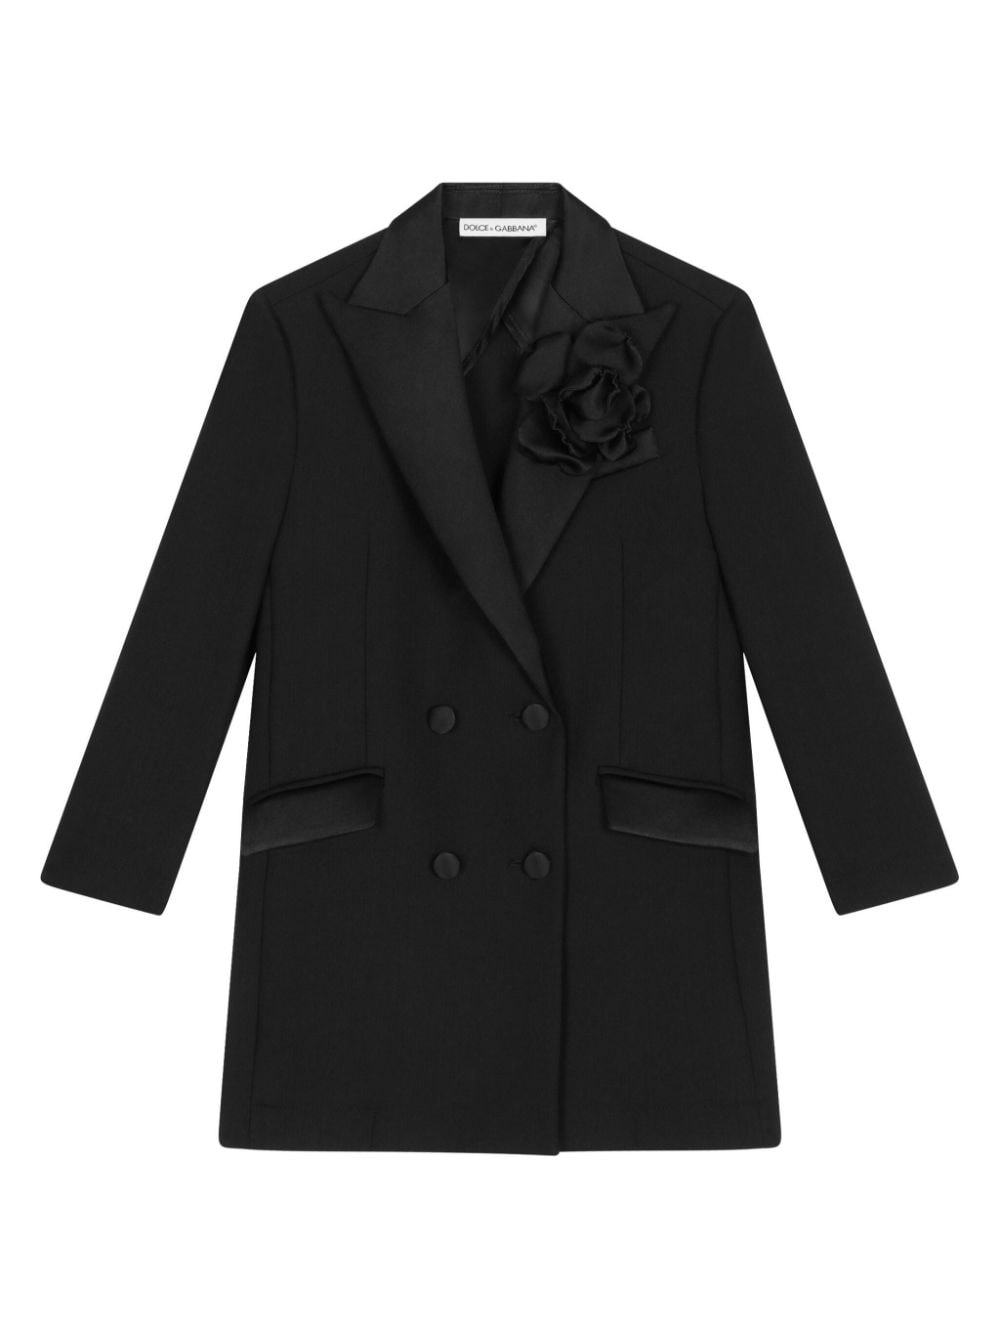 Manteau fille noir avec appliqué fleurs